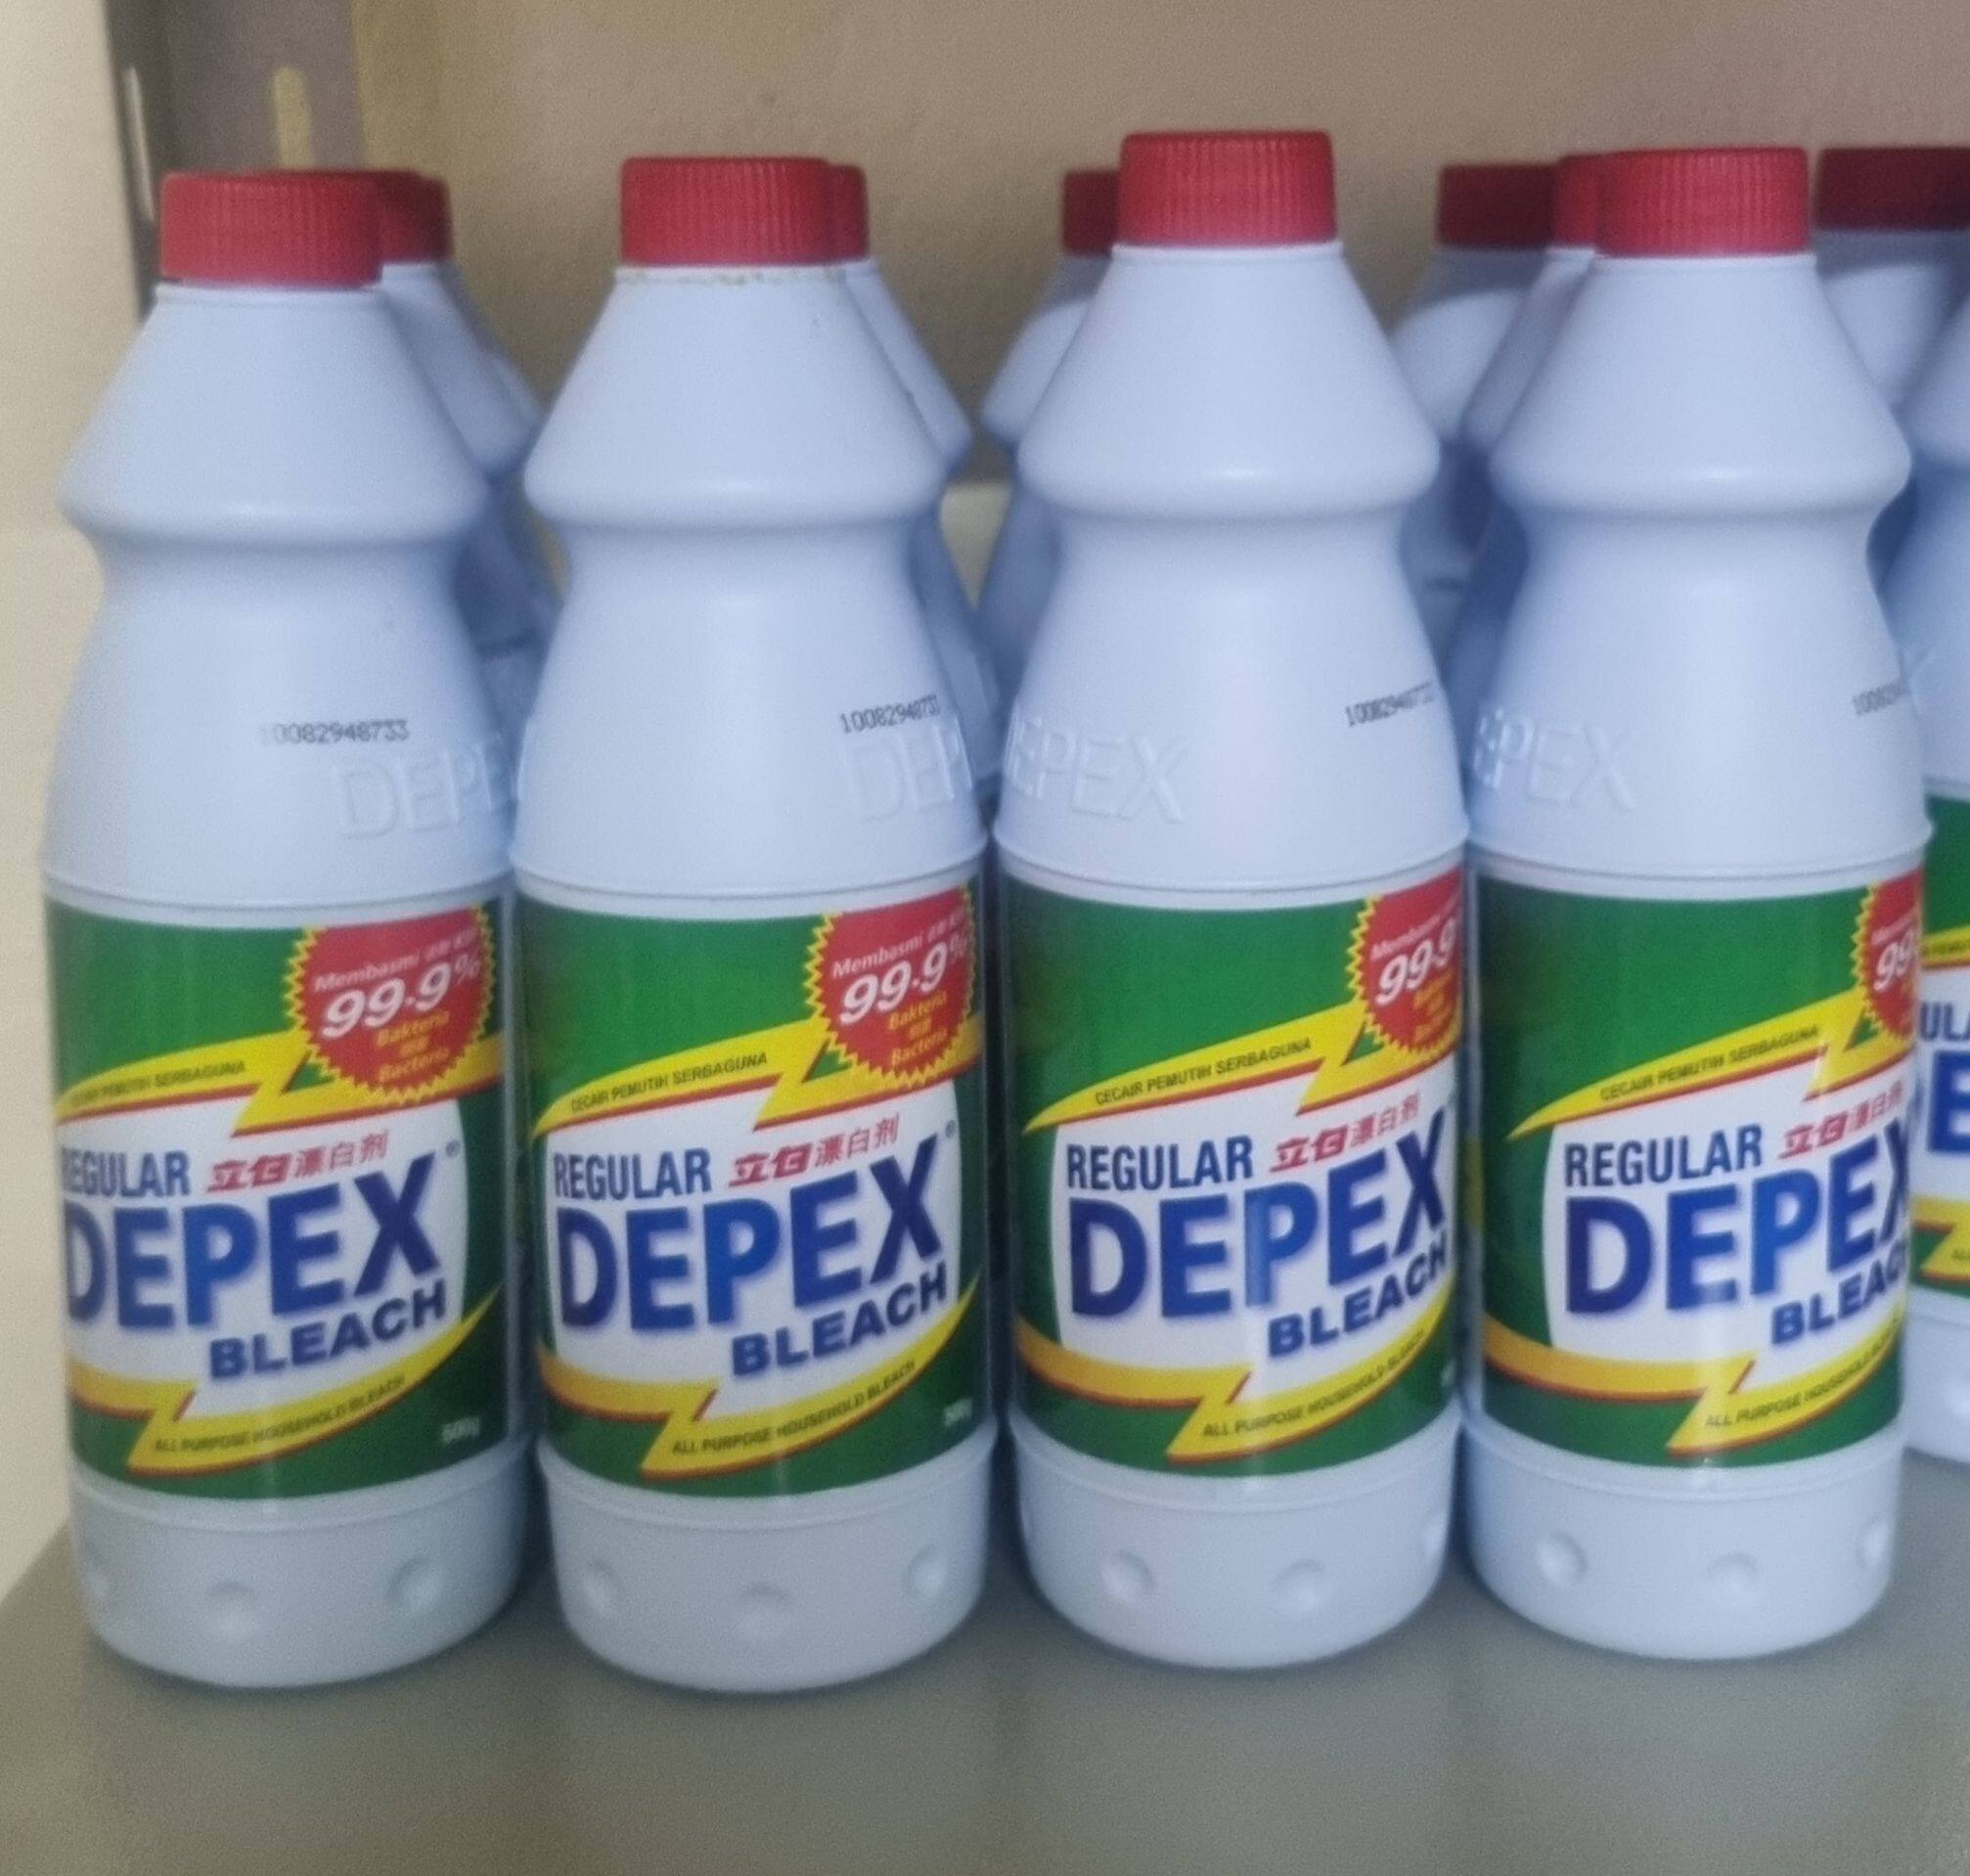 DEPEX น้ำยาฟอกผ้าขาวมาเลย์ ขนาด 500 มล. ของแท้ 100%  จำนวน แพ็ค 2 ขวด